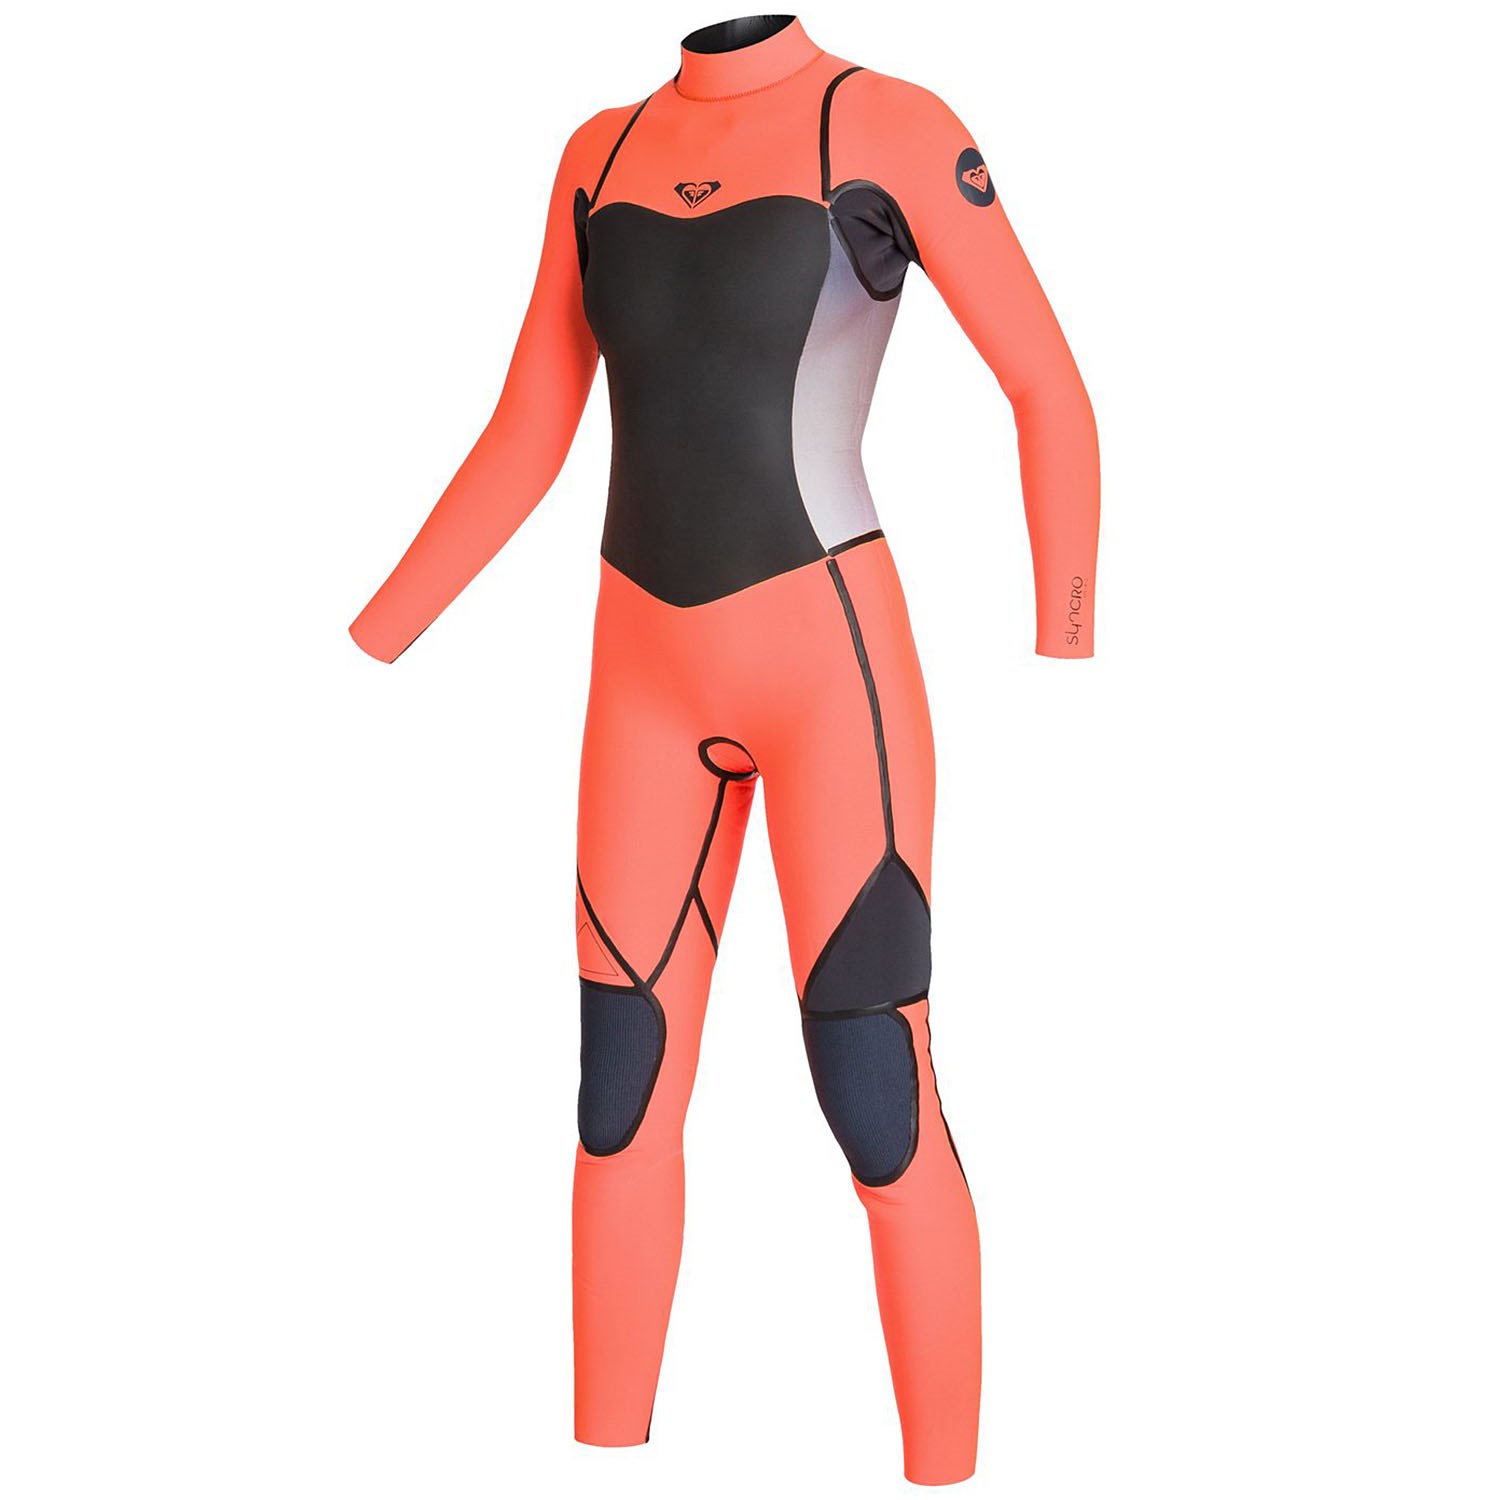 Roxy Syncro GBS 4/3 Back Zip Fullsuit women's size 12 new NWT wetsuit 